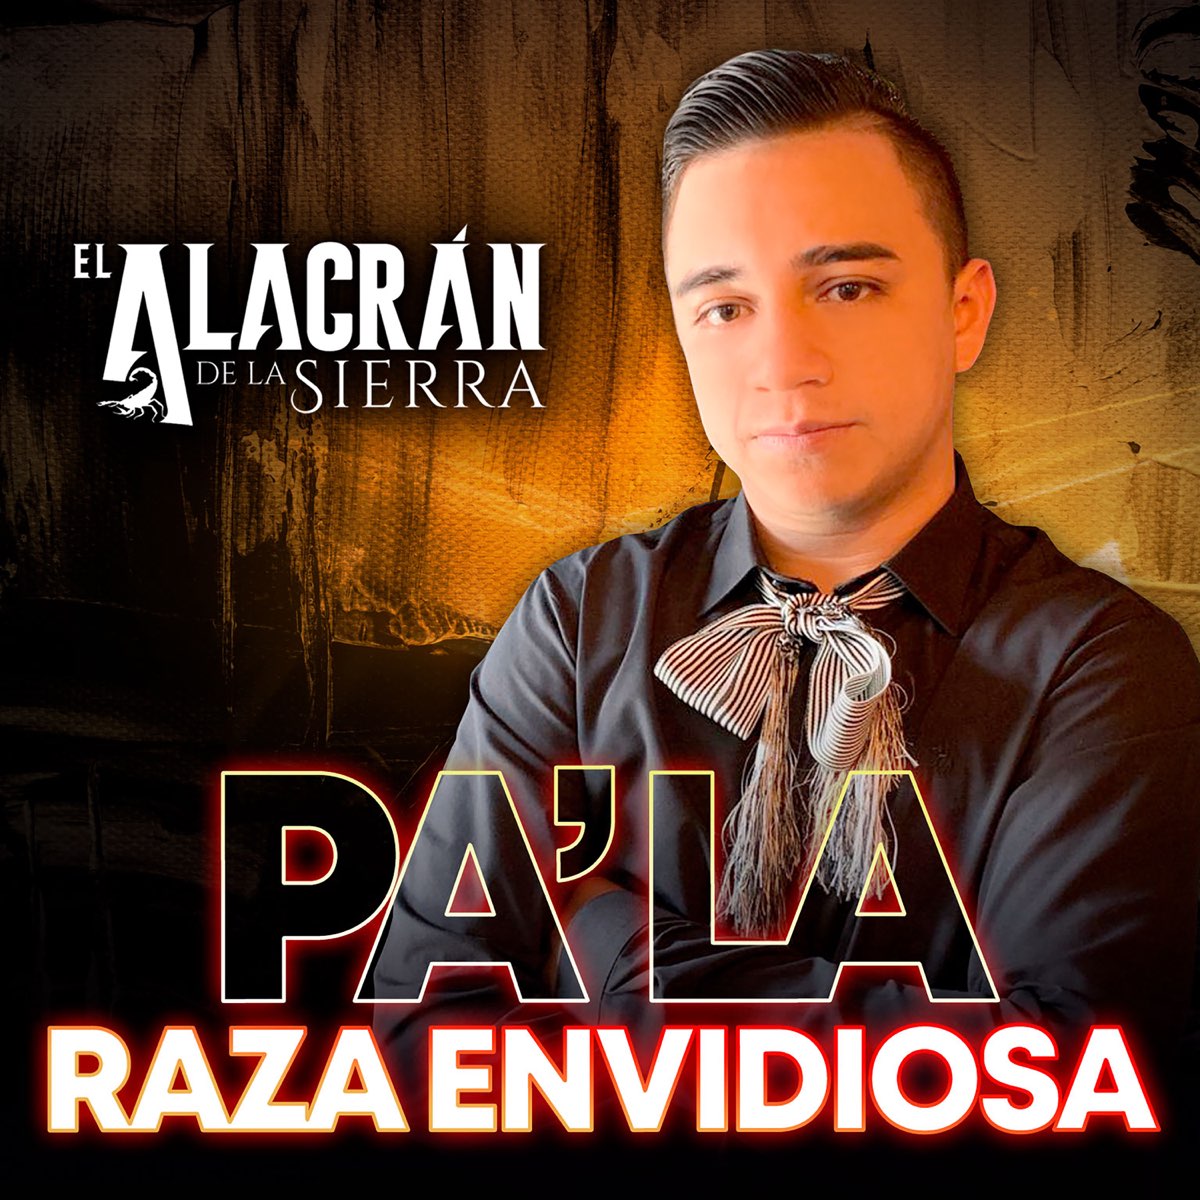 ‎Pa' La Raza Envidiosa - EP by El Alacran de la Sierra on Apple Music